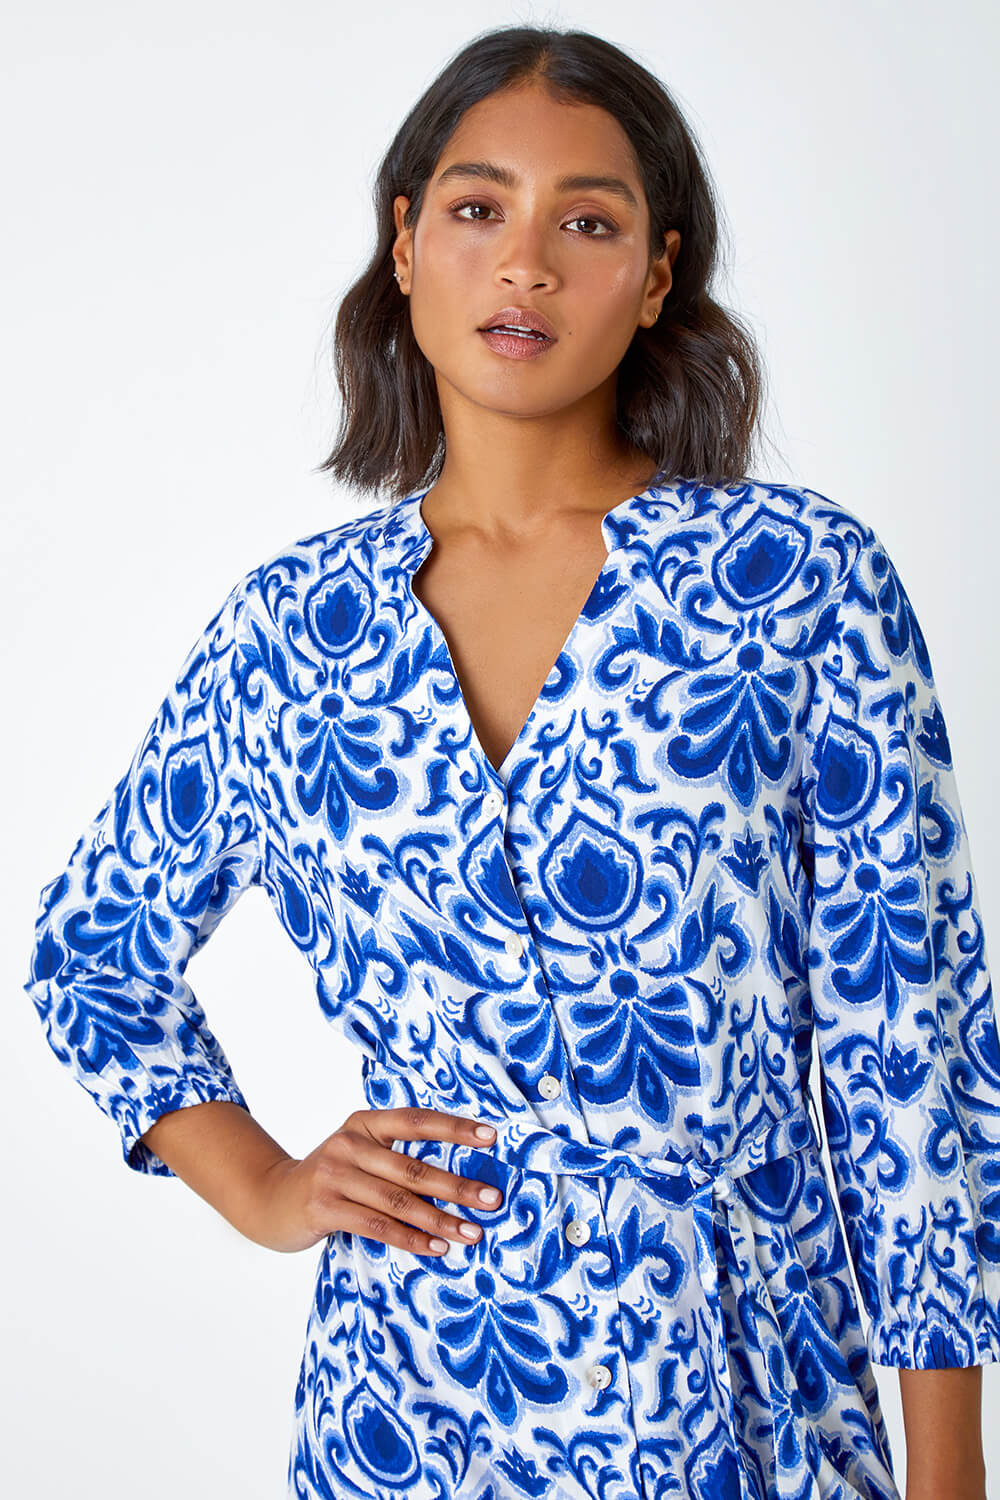 Royal Blue Abstract Border Print Shirt Dress, Image 4 of 5